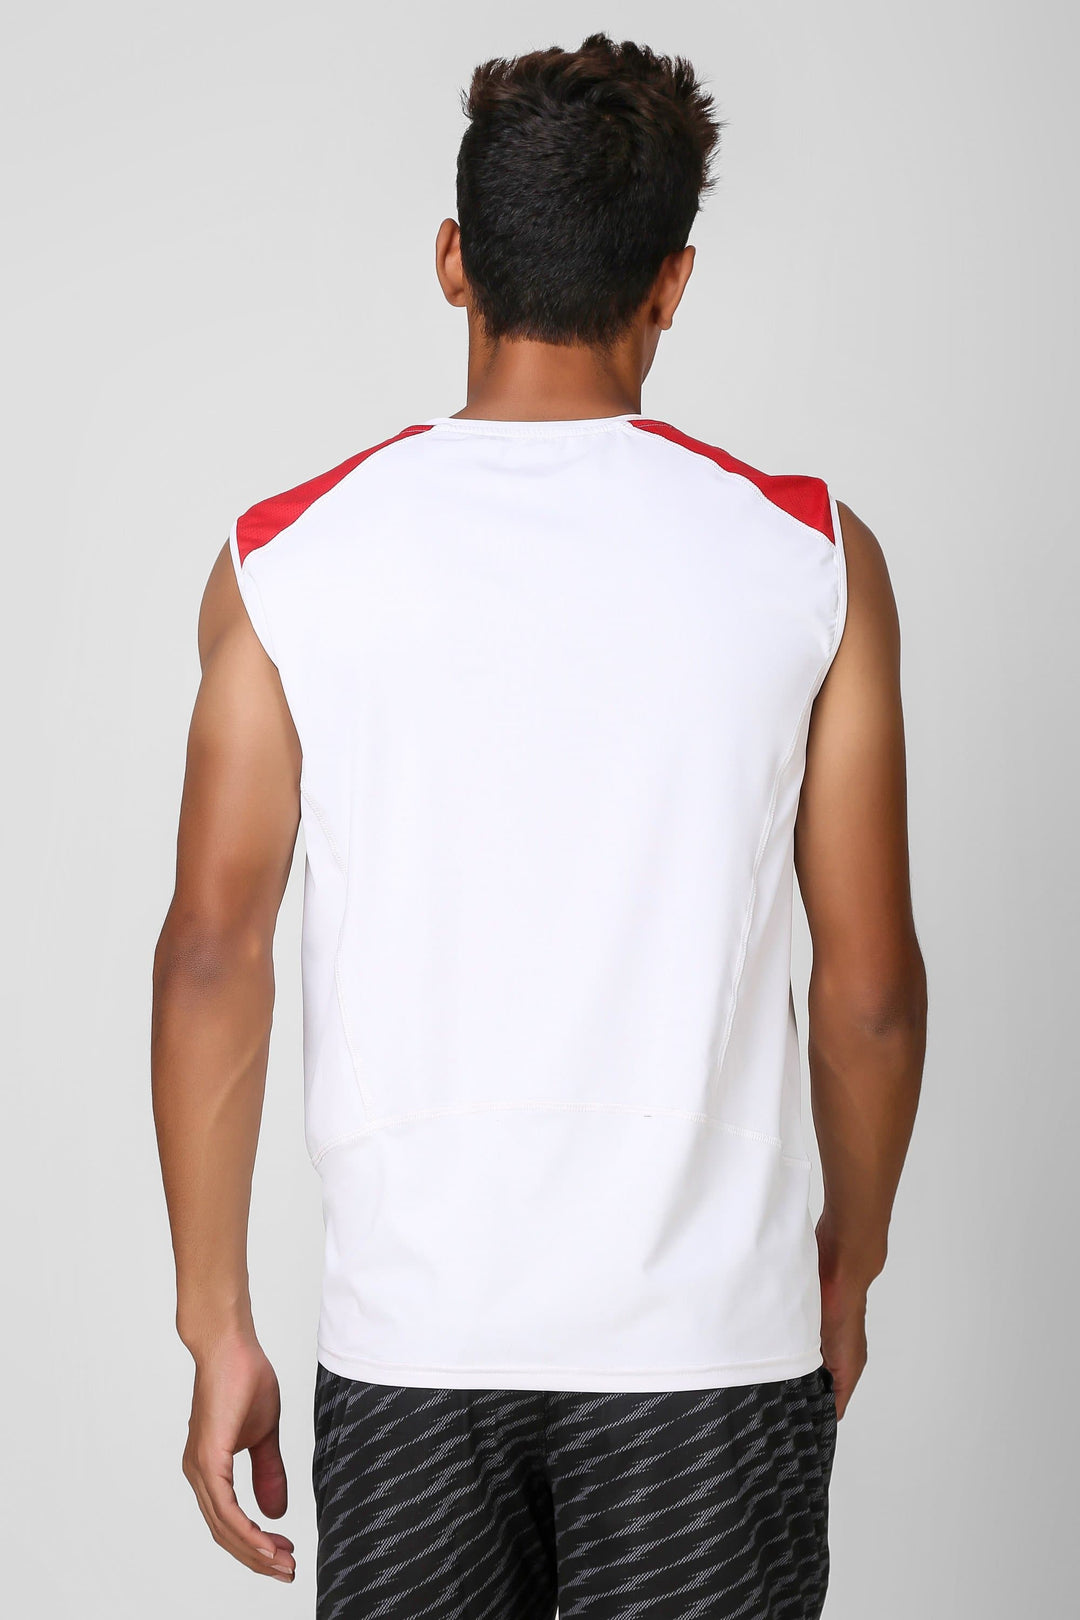 Camo Print Stretchable Sleeveless Tshirt 3